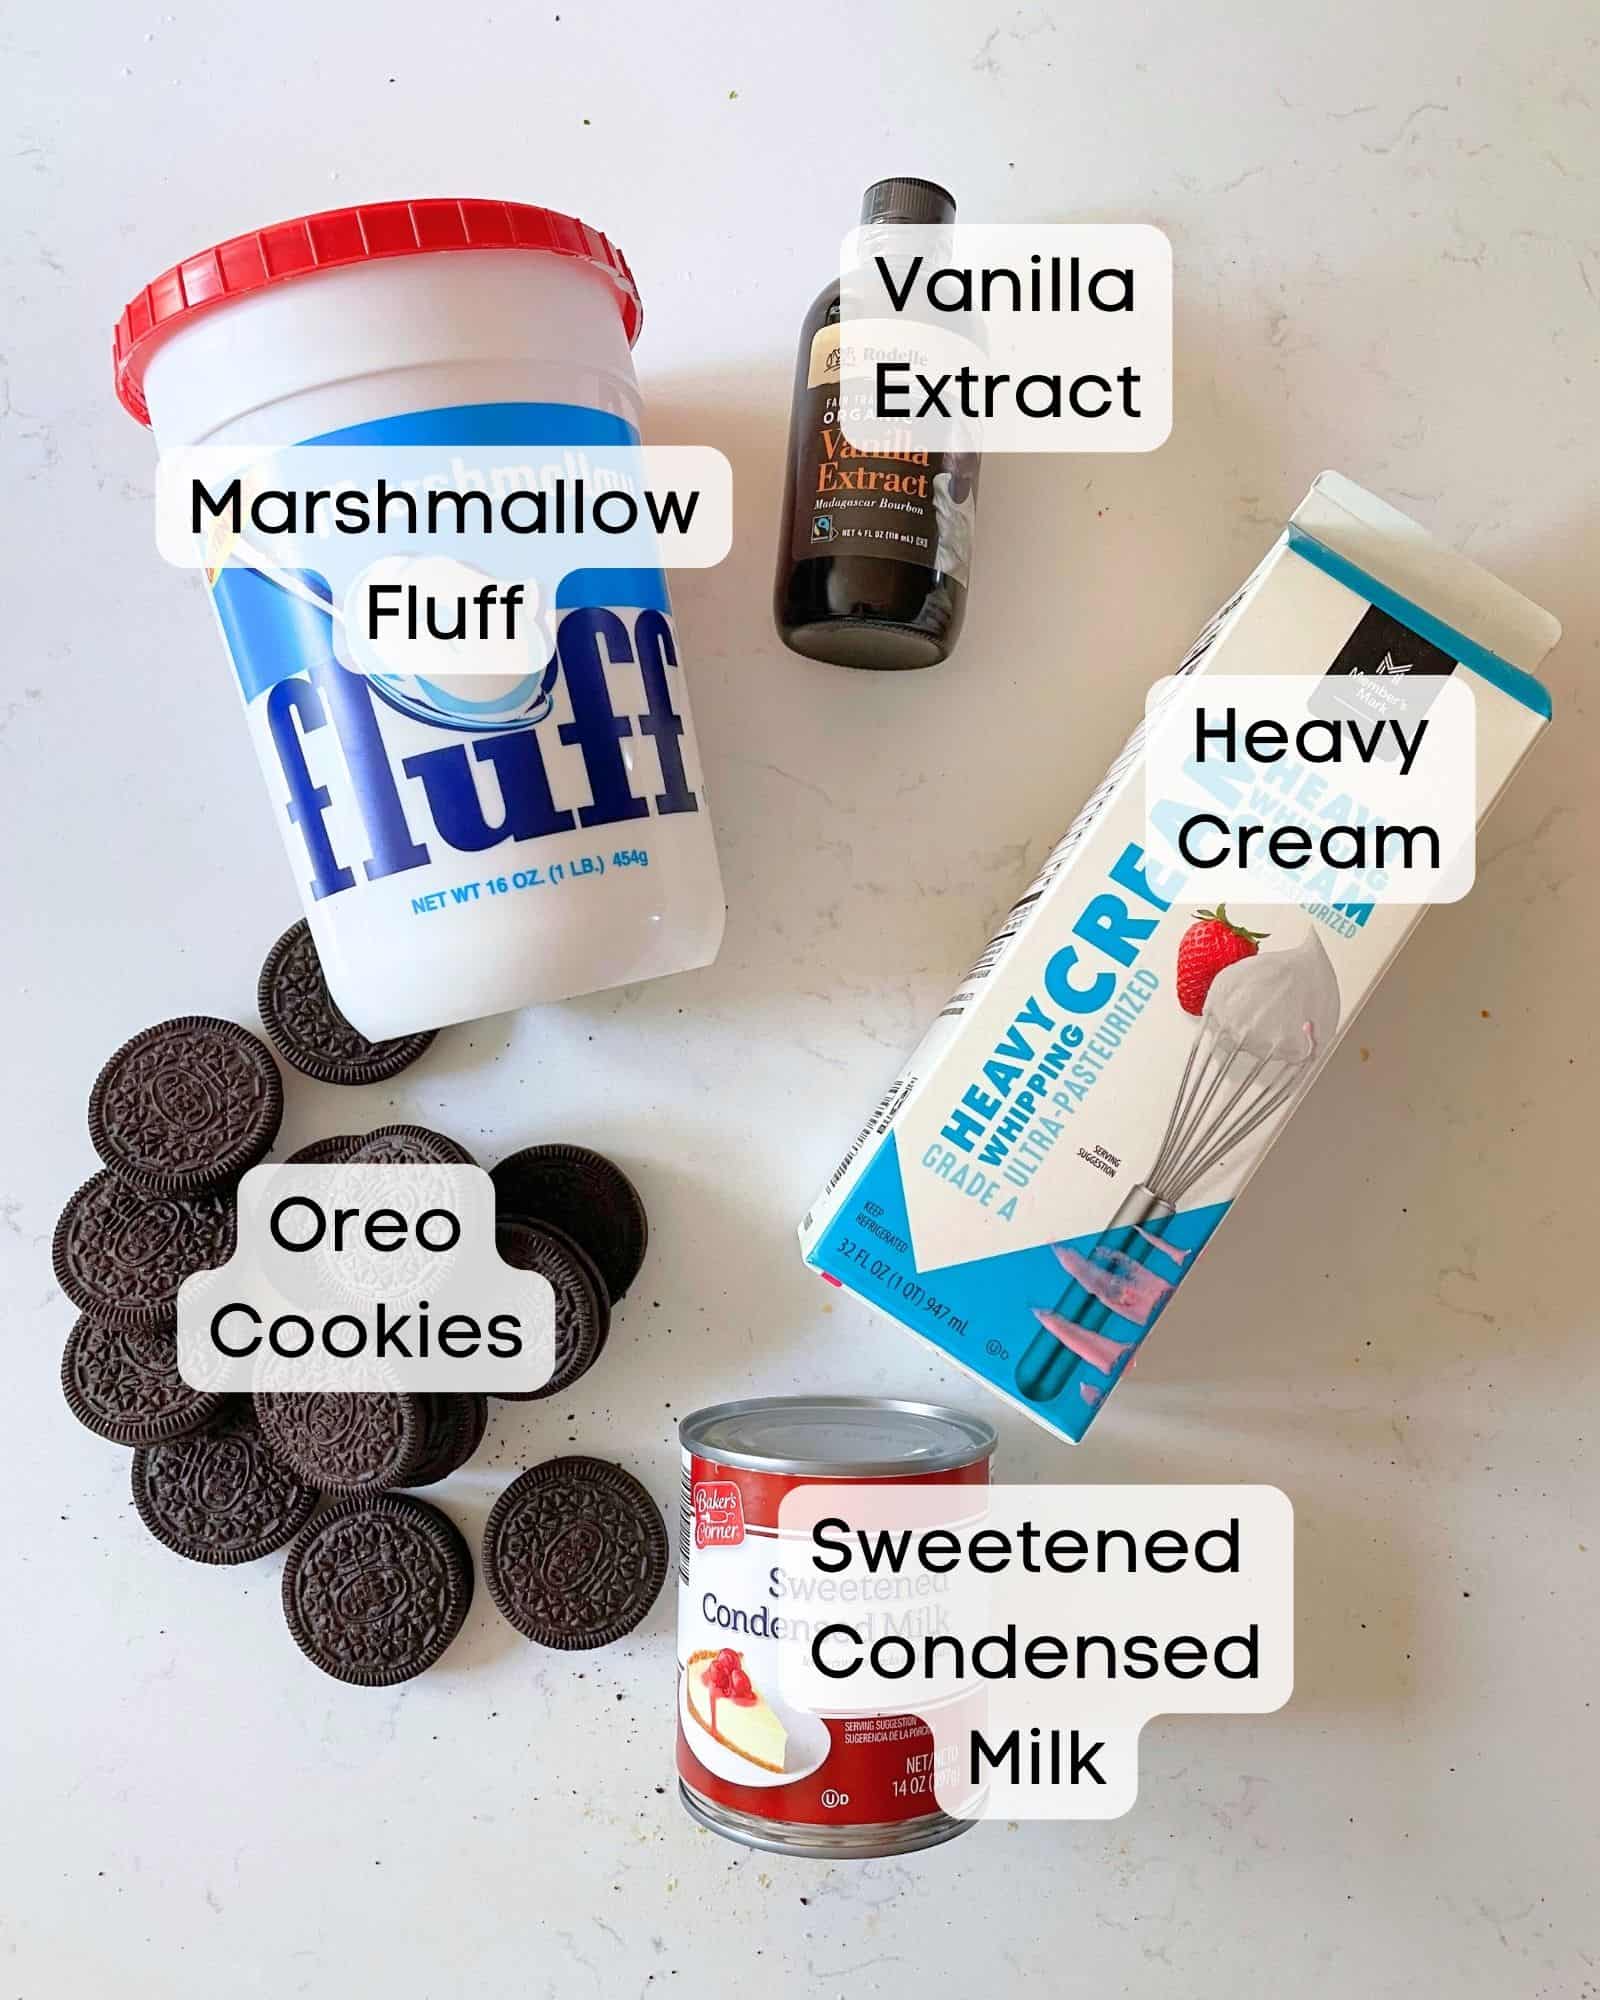 ingredients to make oreo ice cream - heavy cream, sweetened condensed milk, oreo cookies, vanilla extract, and sweetened condensed milk.